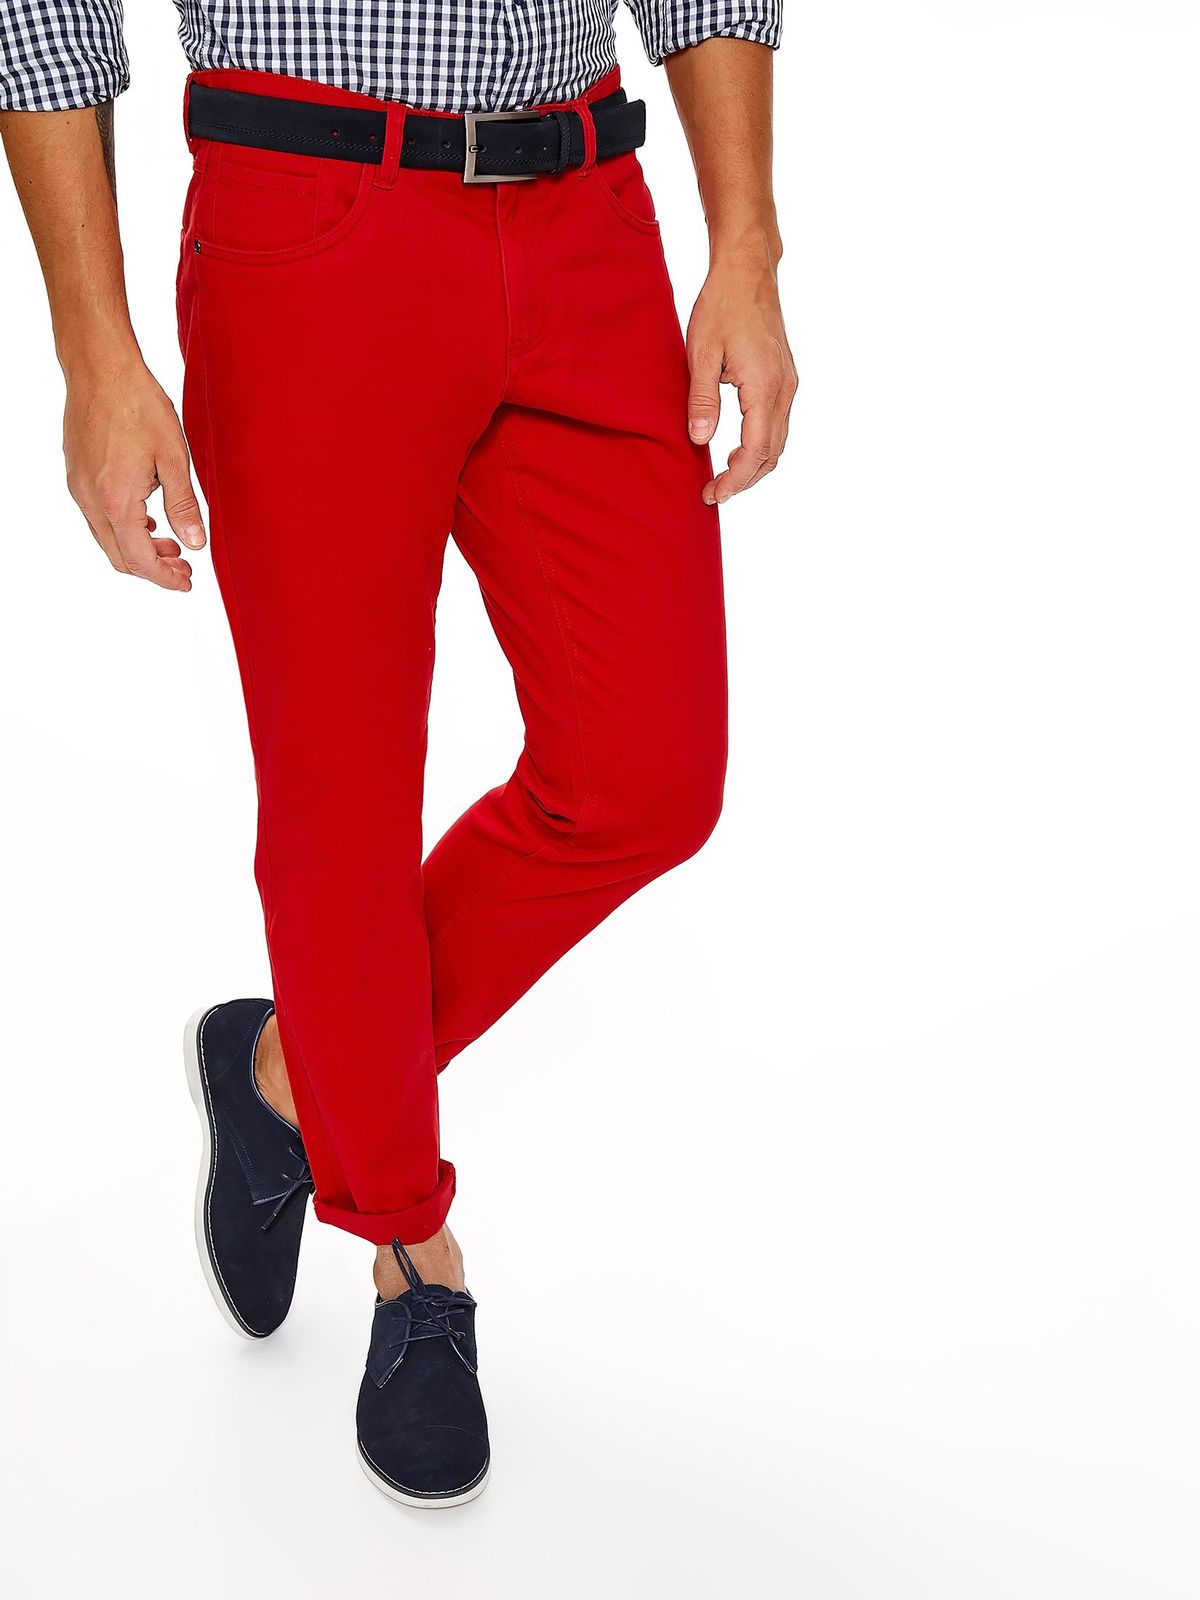 Красные штаны мужские